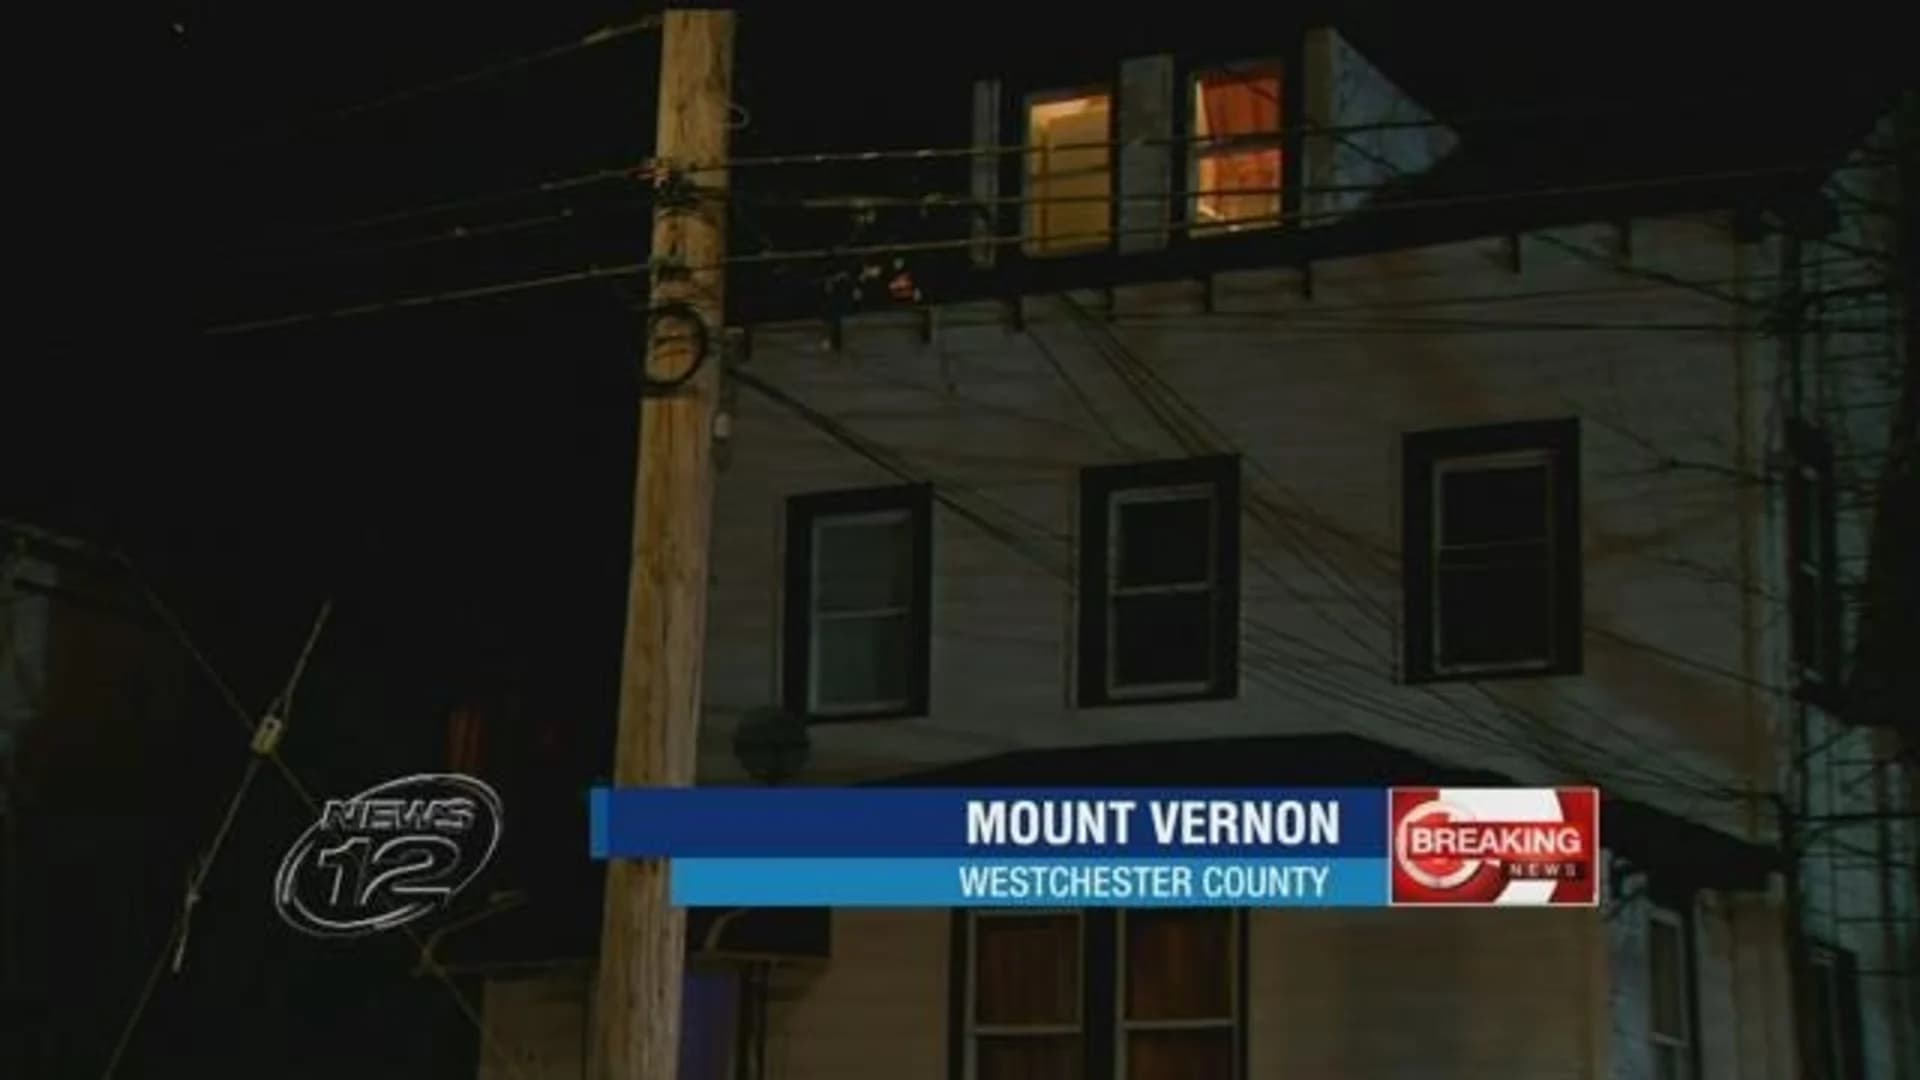 Man found dead in Mount Vernon identified